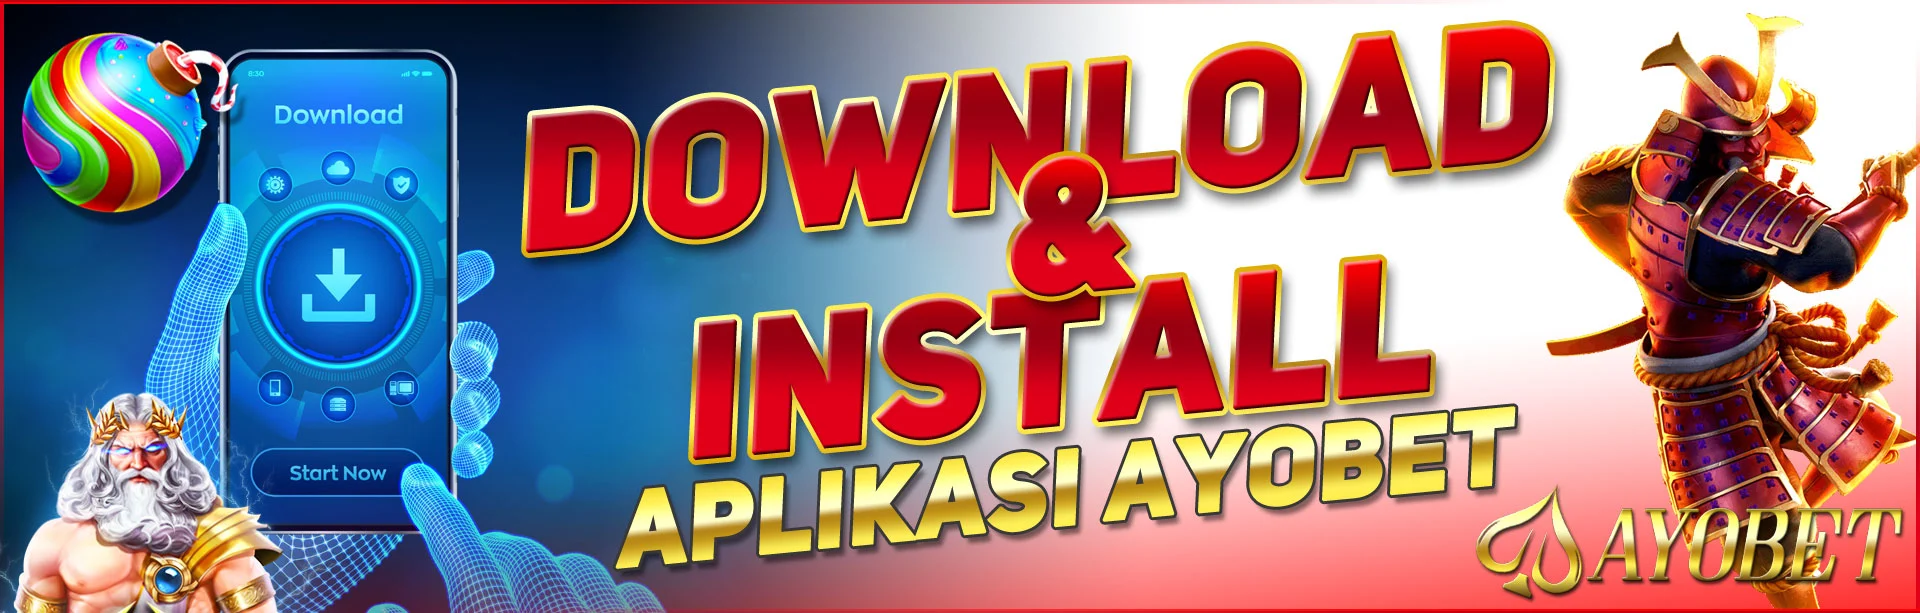 APK Ayobet Download